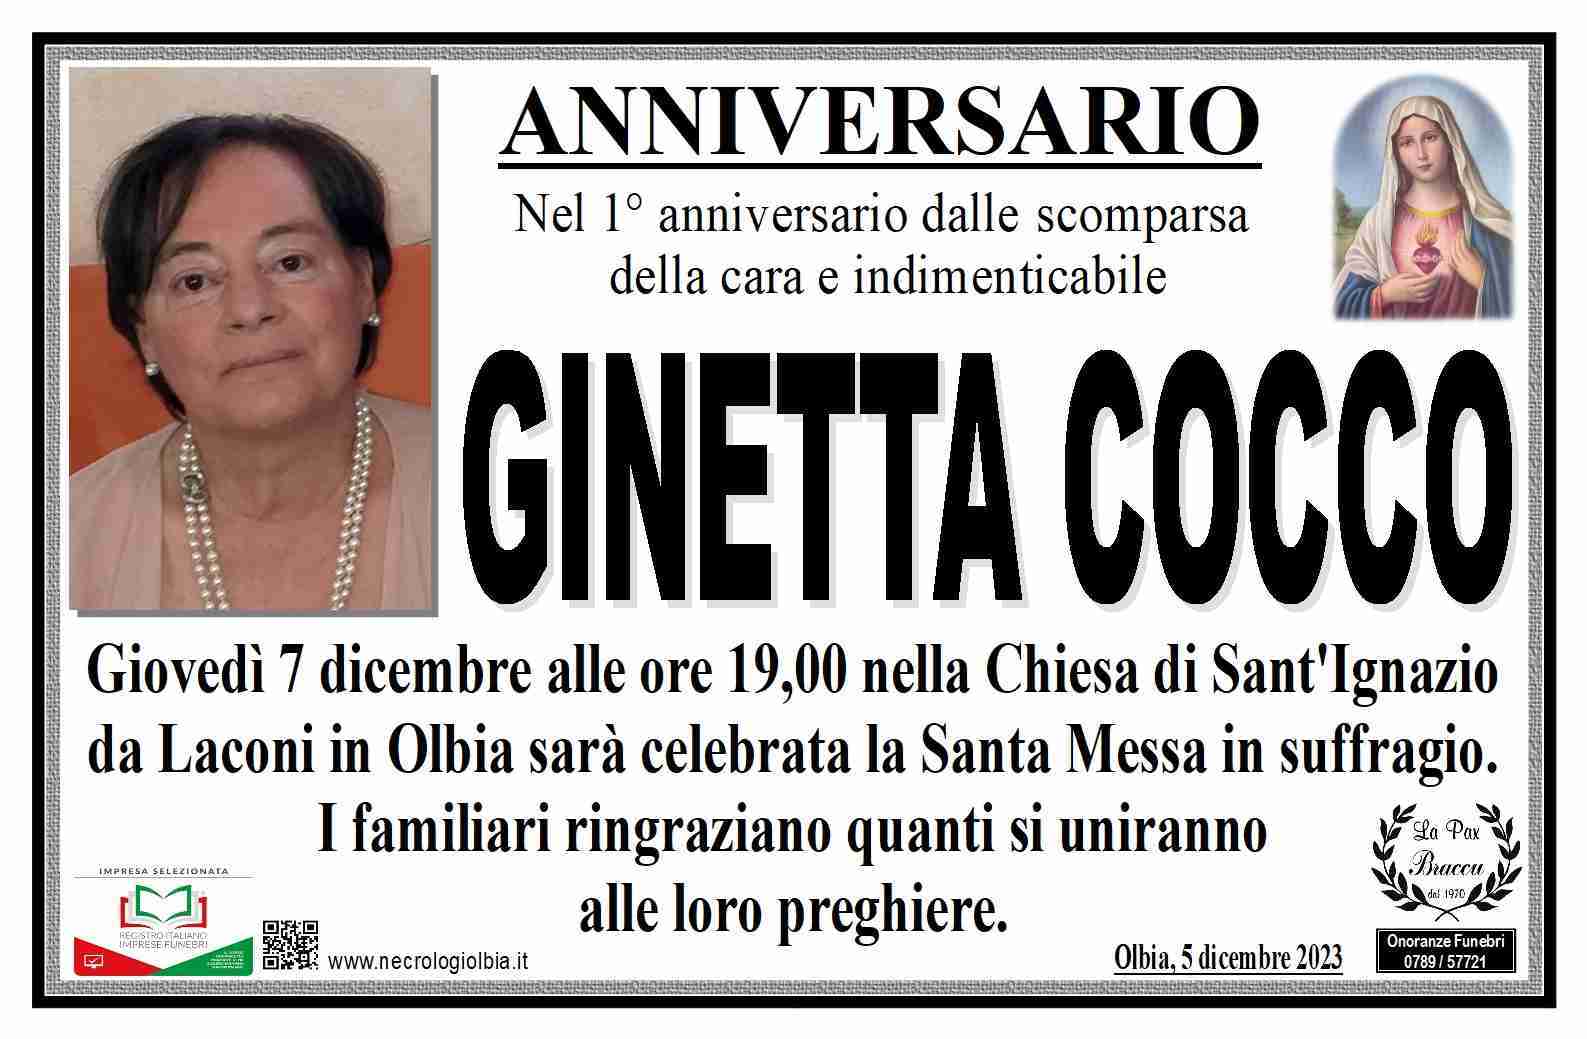 Ginetta Cocco